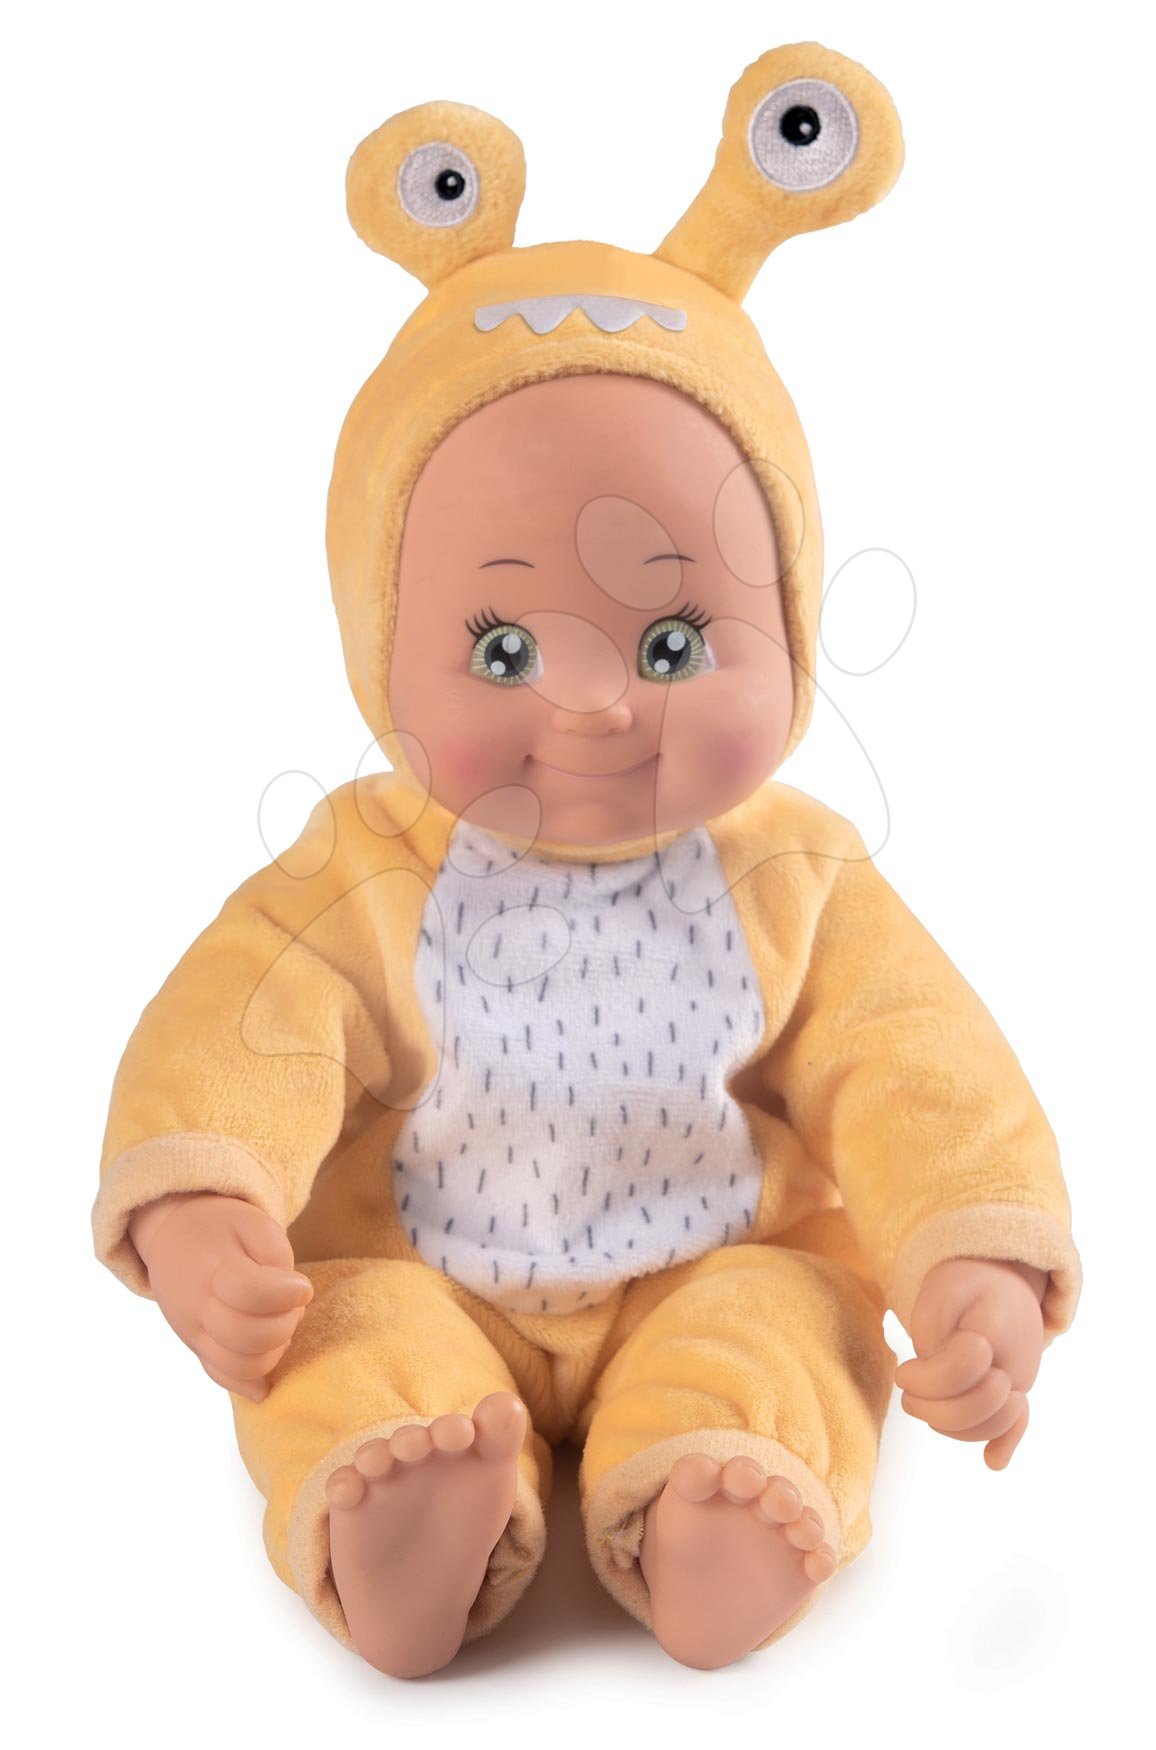 Játékbaba jelmezben Csiga MiniKiss Croc Smoby sárga ‚puszi’ hanggal és puha testtel 12 hó-tól